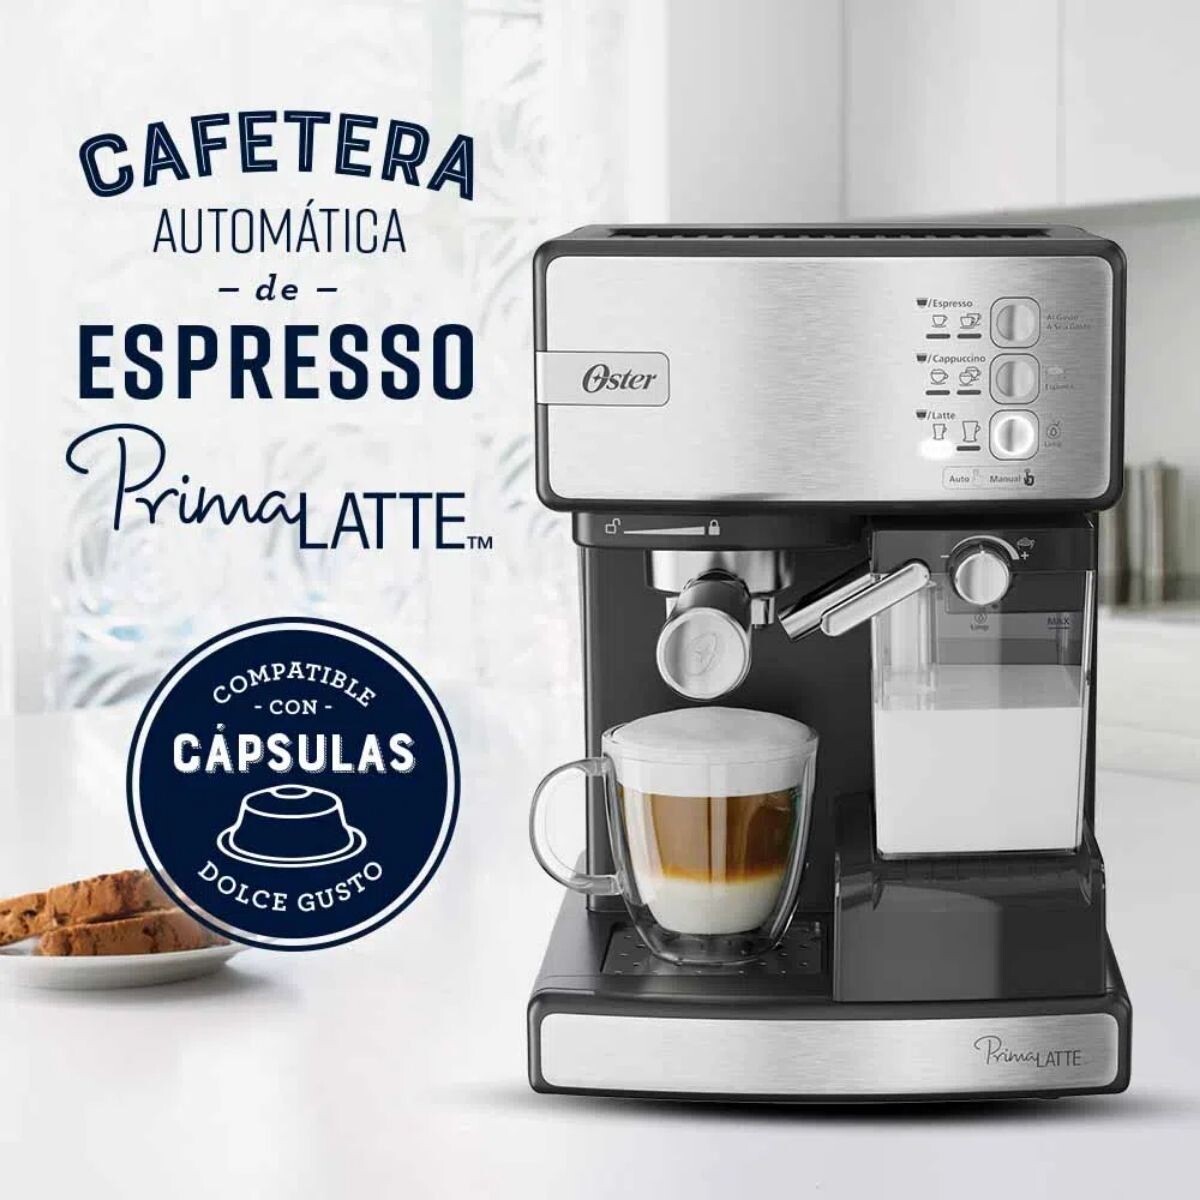 Cafetera Automática De Espresso Oster® Primalatte Os-6603ss 